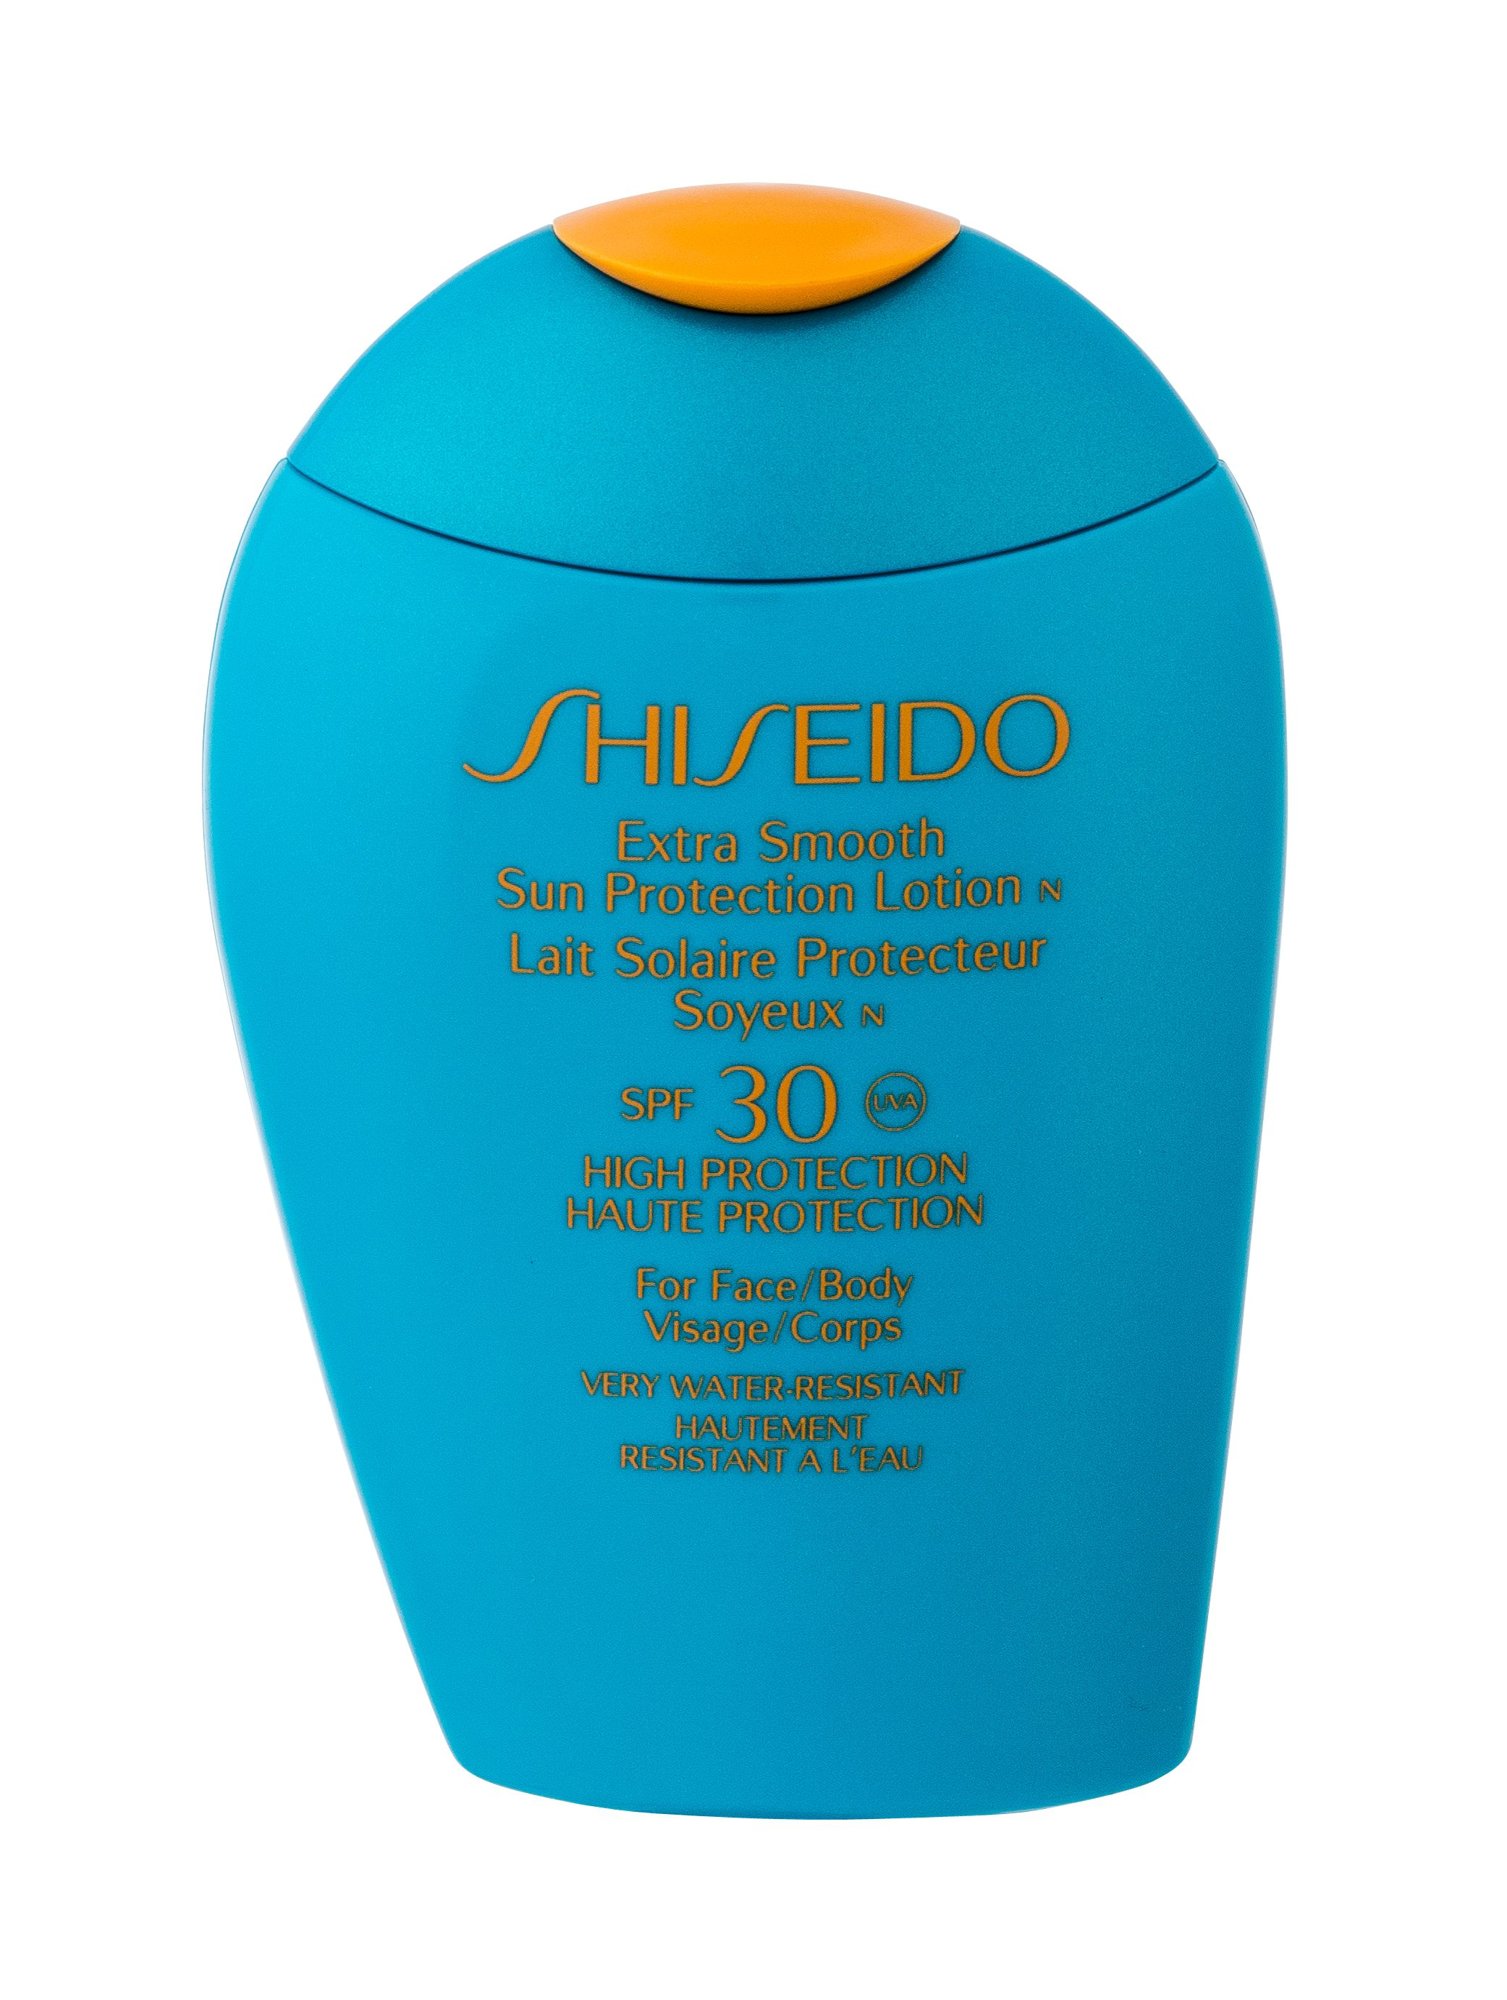 Shiseido Extra Smooth Sun Protection 100ml įdegio losjonas (Pažeista pakuotė)